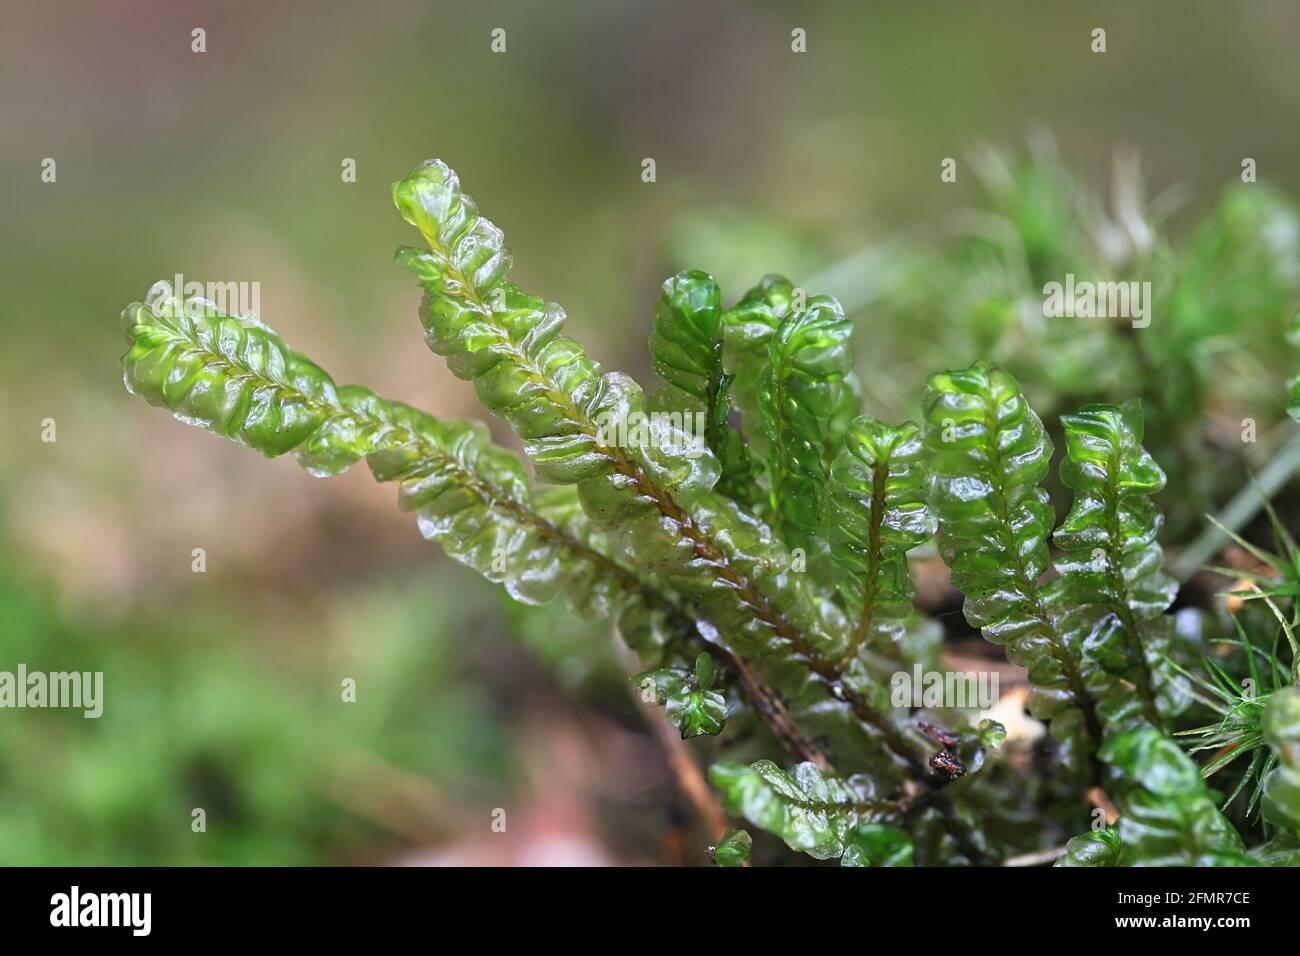 plagiochila-asplenioides-known-as-greater-featherwort-moss-2FMR7CE.jpg